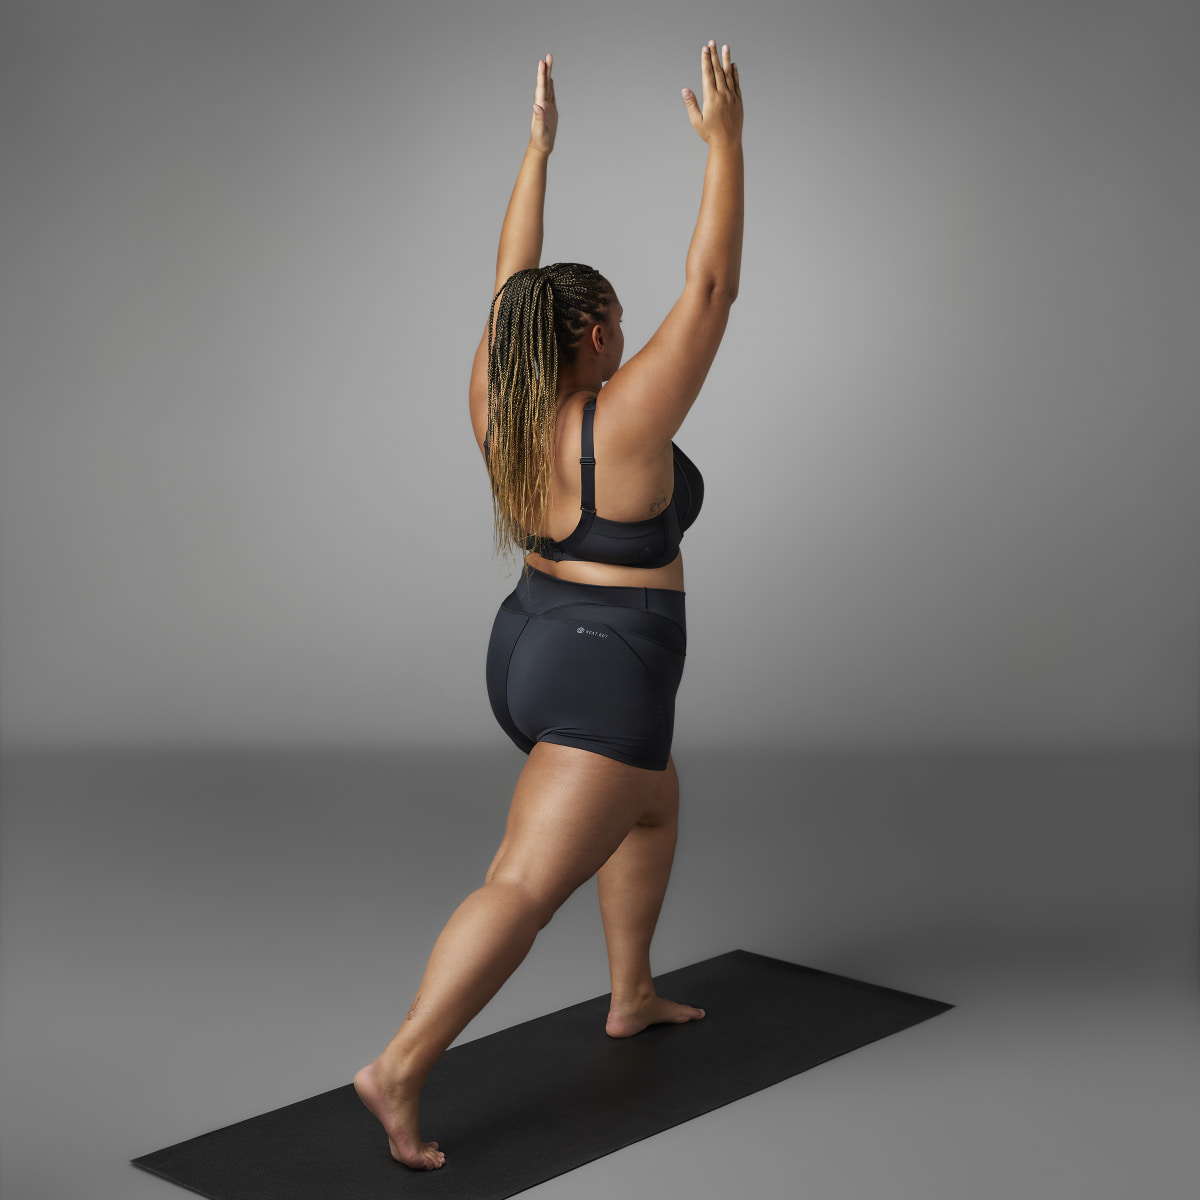 Adidas Collective Power Yoga Studio kurze Leggings – Große Größen. 8